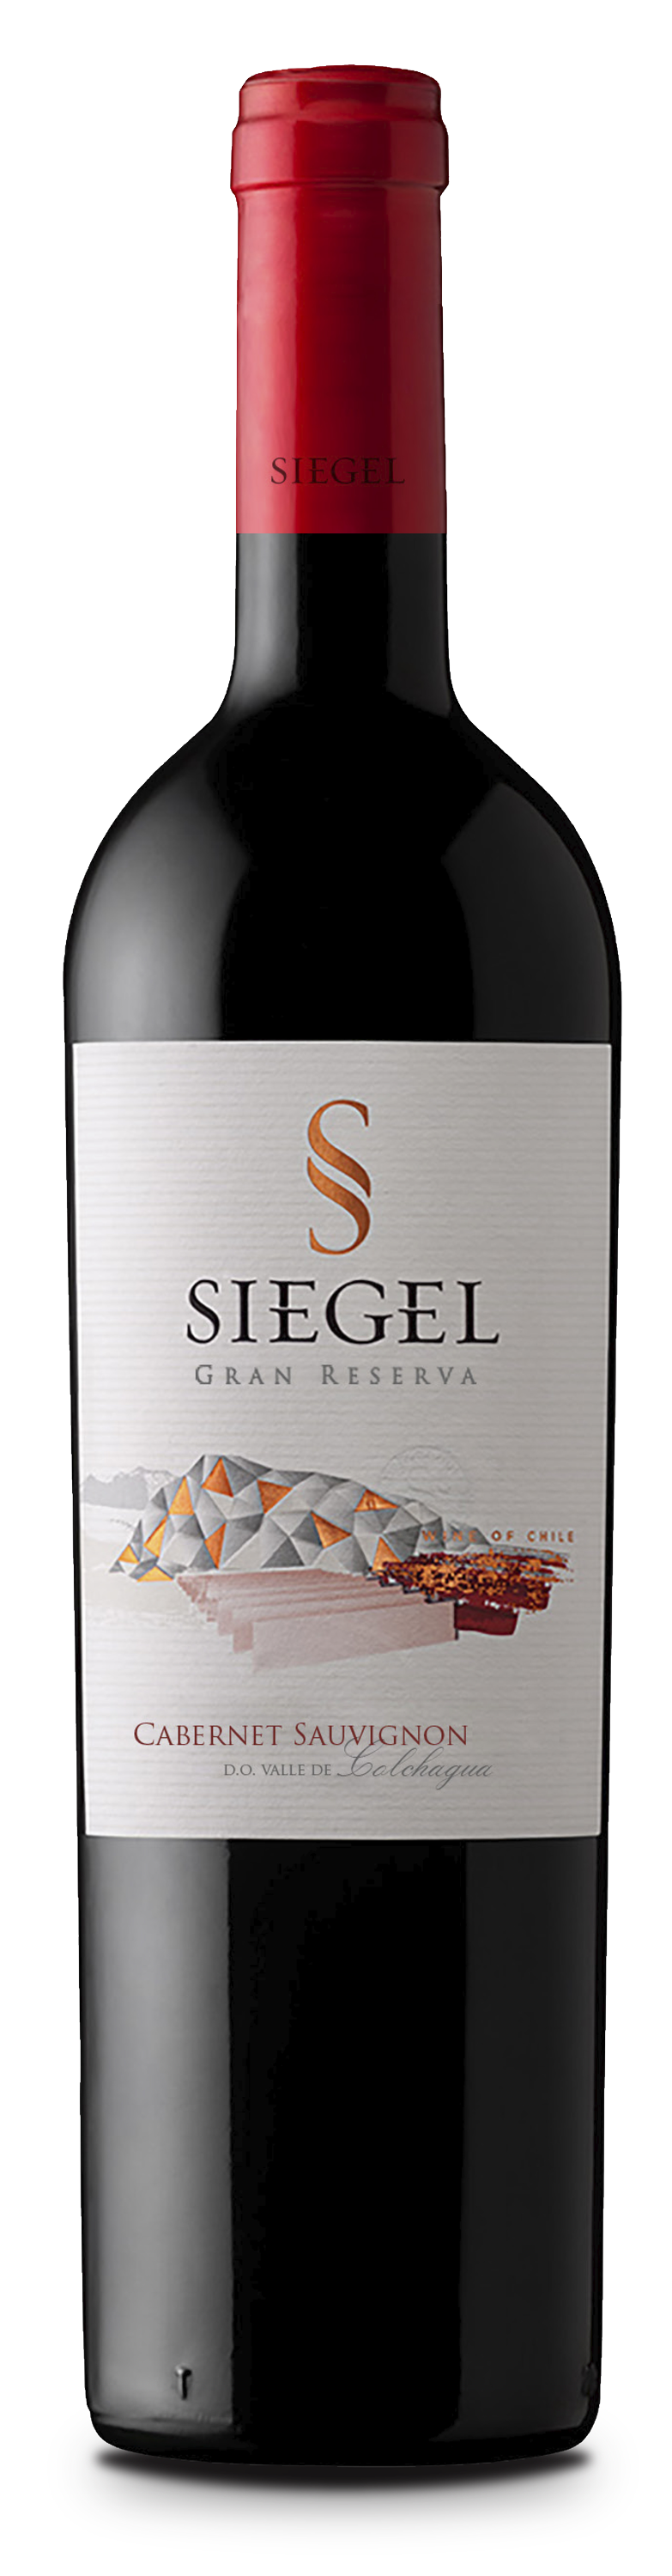 Cabernet Sauvignon Gran Reserva - Vina Siegel 0,75l